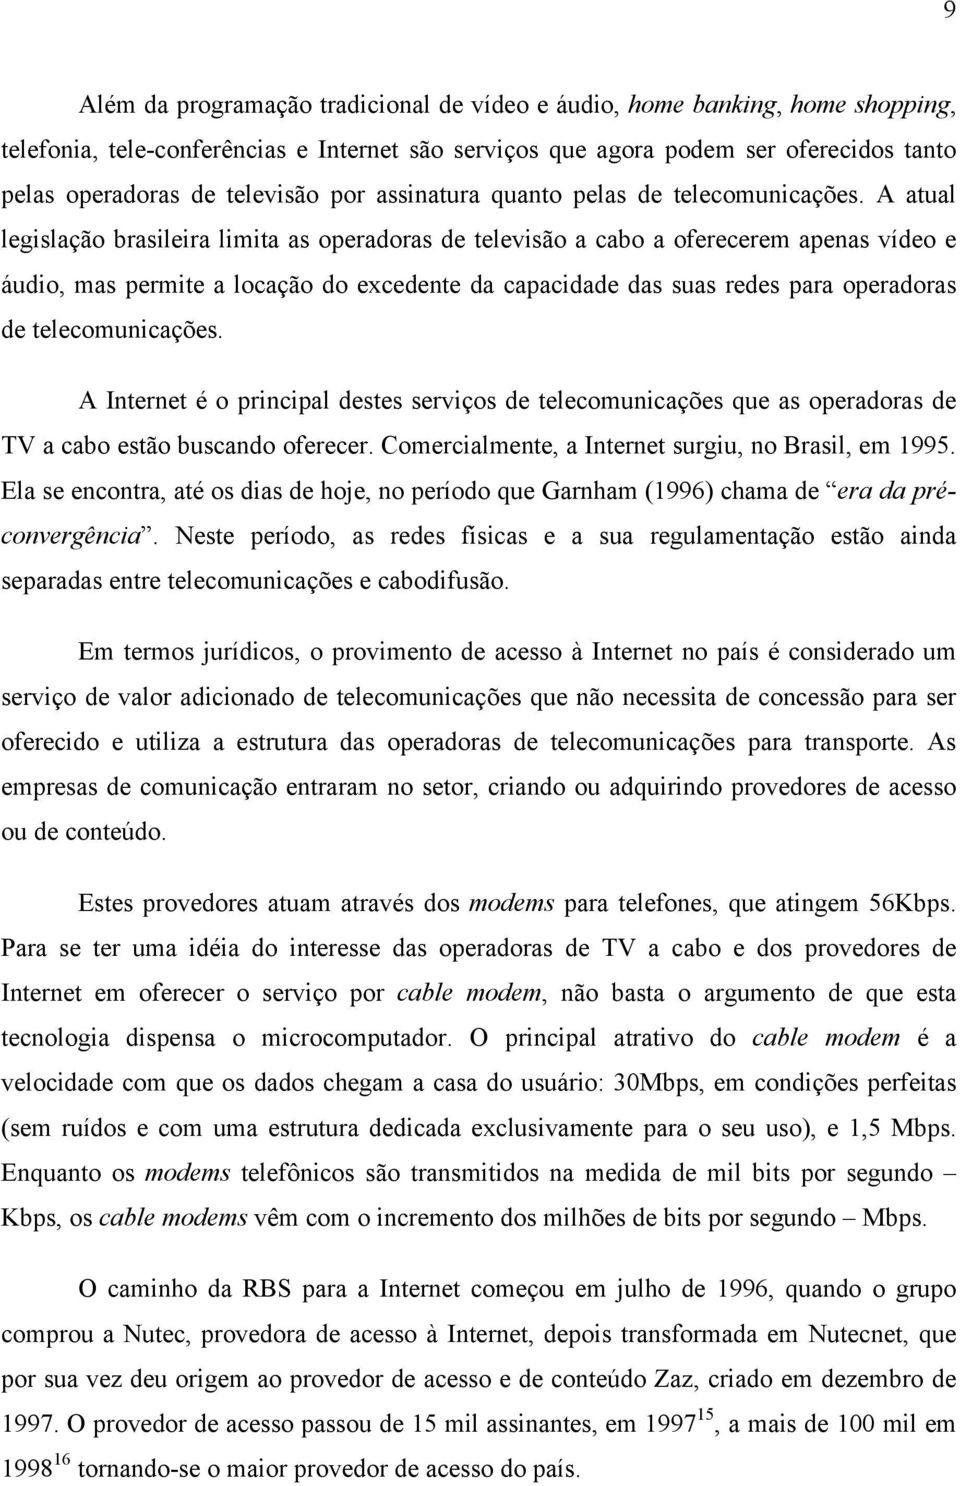 A atual legislação brasileira limita as operadoras de televisão a cabo a oferecerem apenas vídeo e áudio, mas permite a locação do excedente da capacidade das suas redes para operadoras de